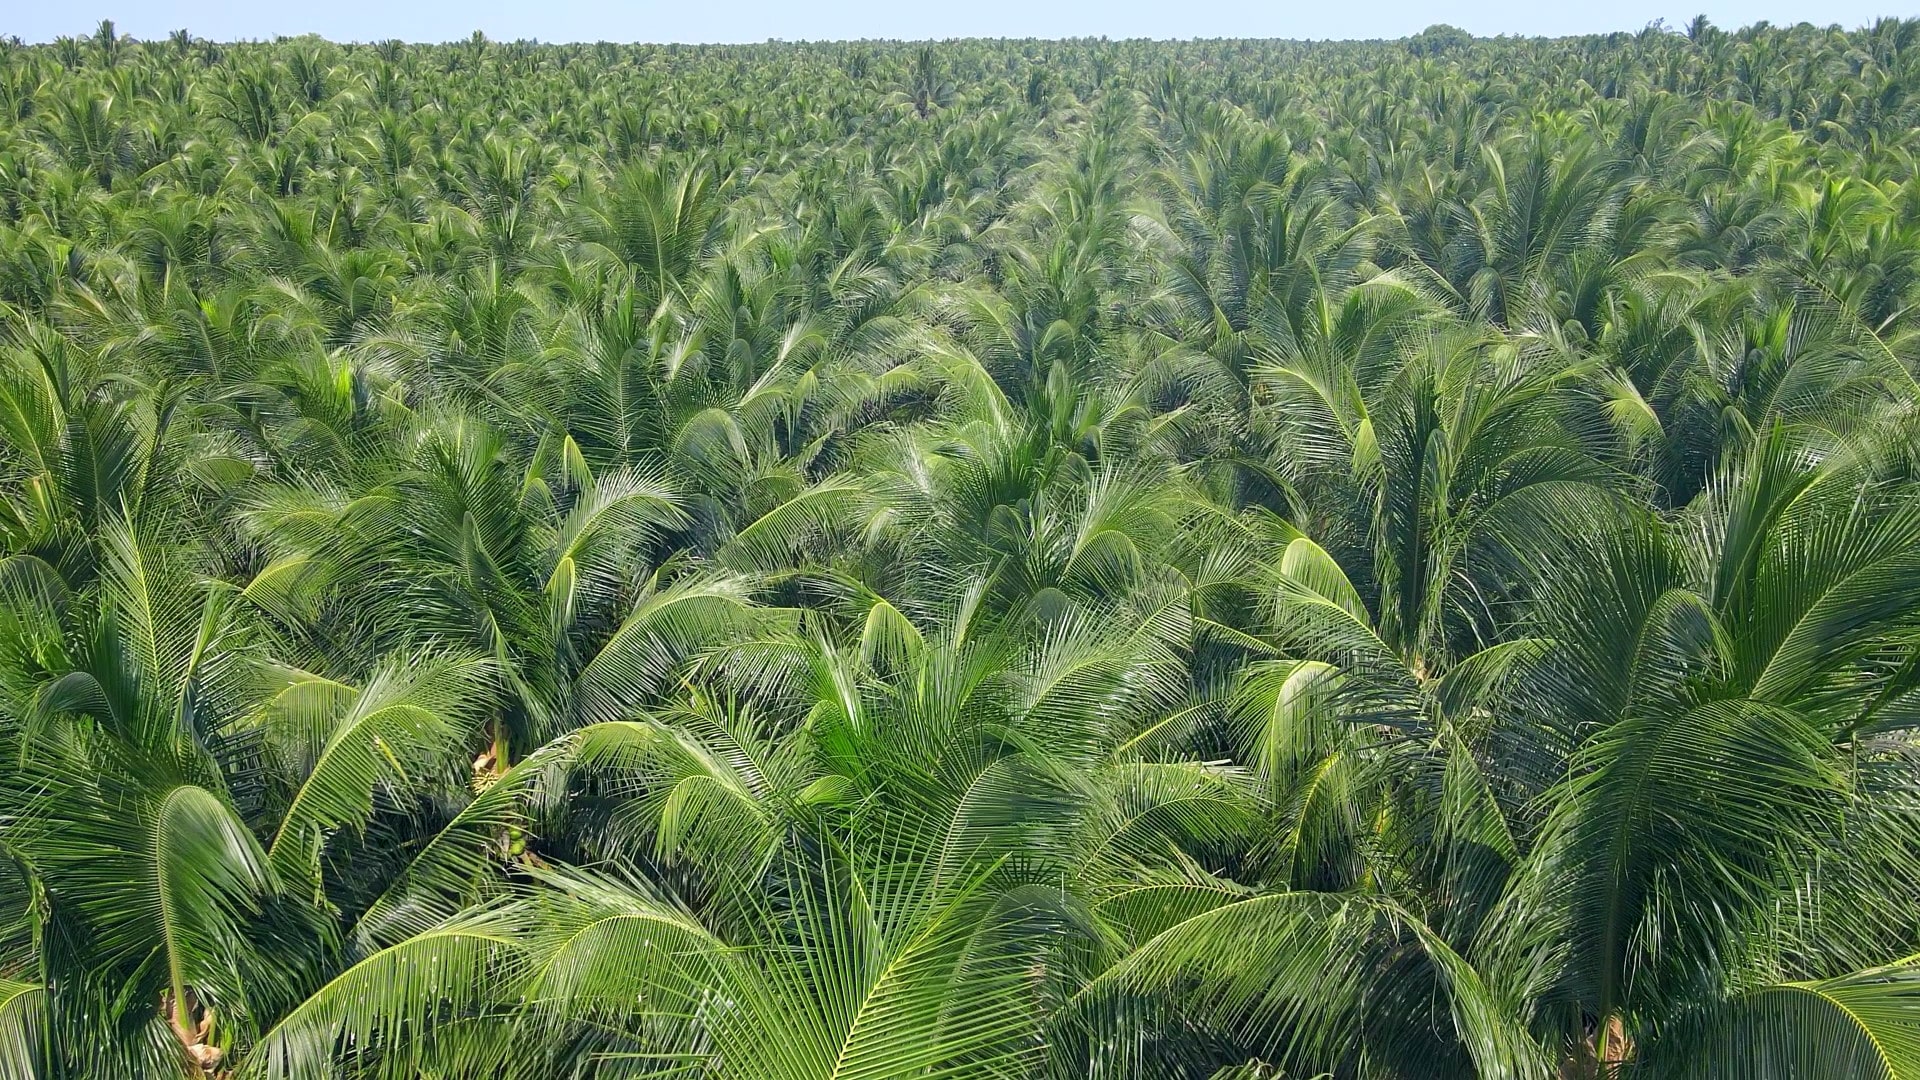 Rita Coconut Farm In Ben Tre Province 